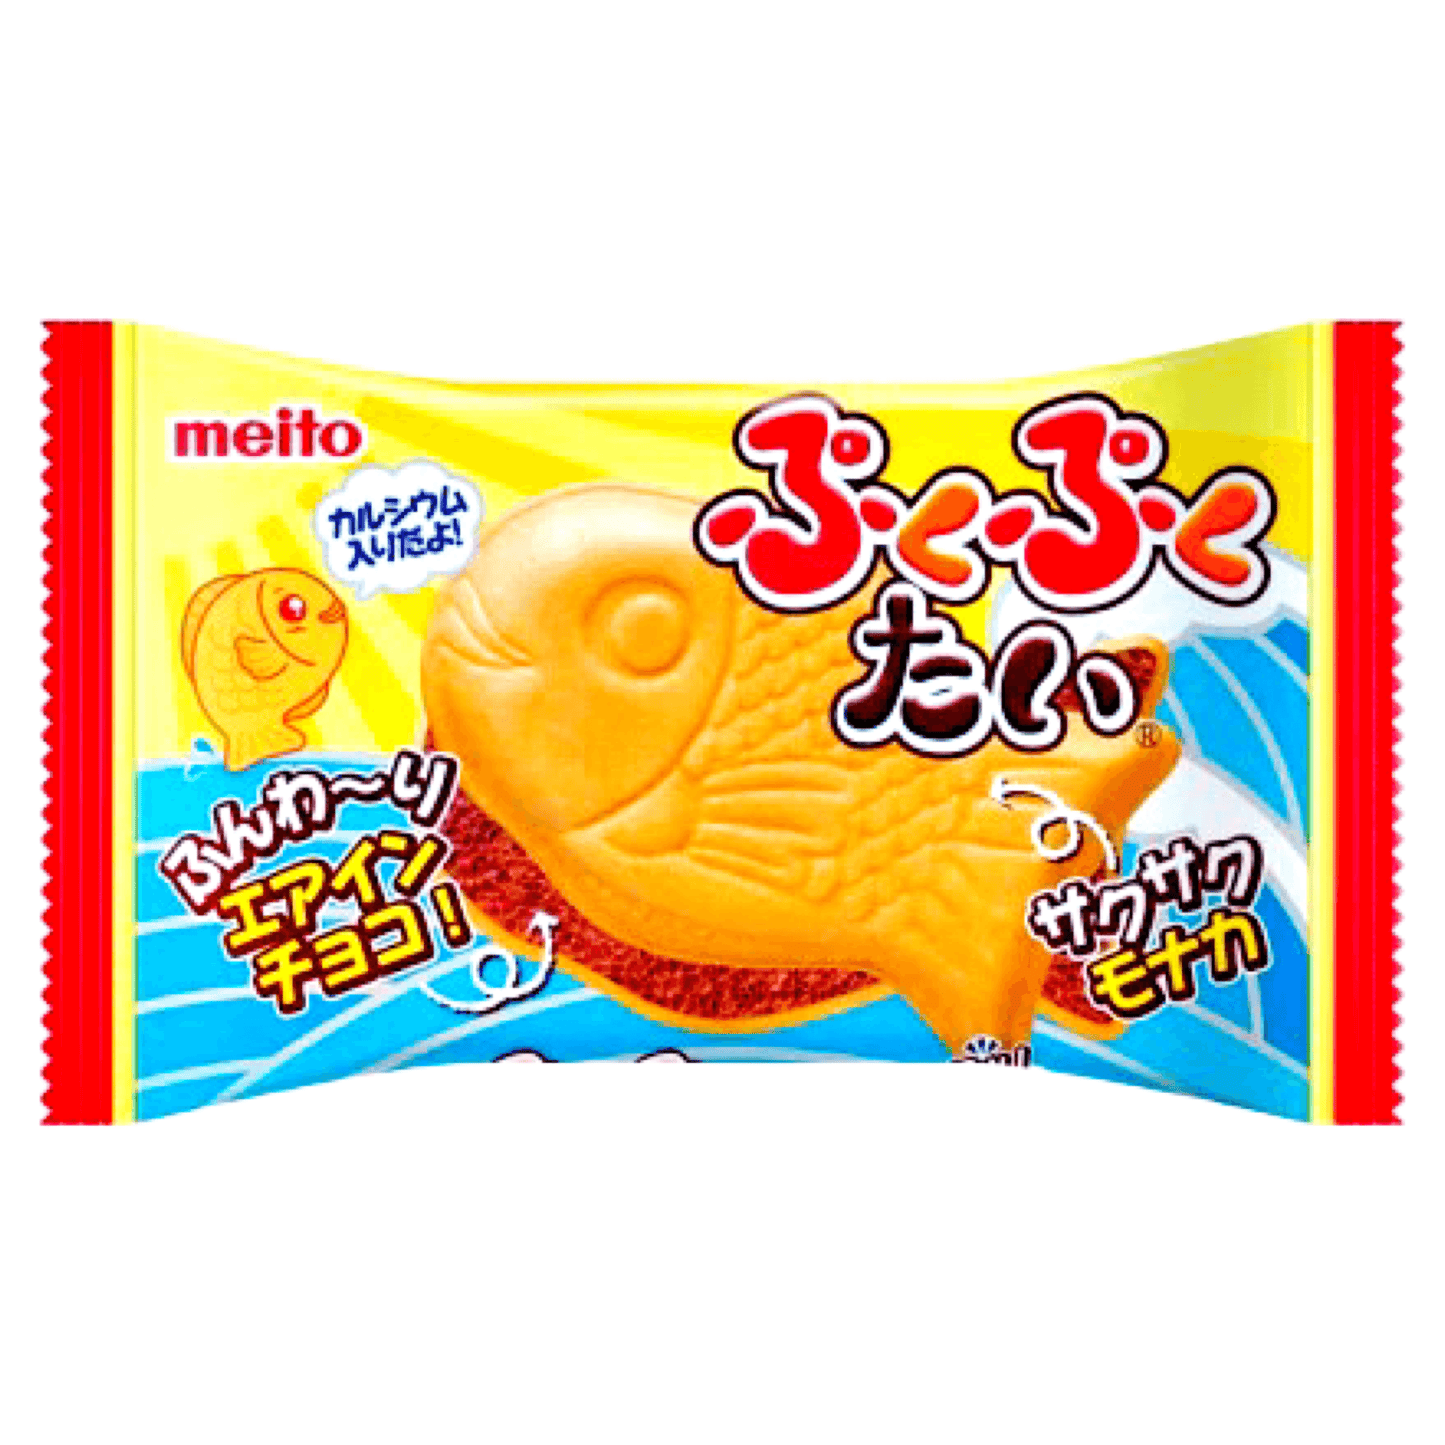 Meito Pukupuku Tai Taiyaki Chocolate - The Snacks Box - Asian Snacks Store - The Snacks Box - Korean Snack - Japanese Snack